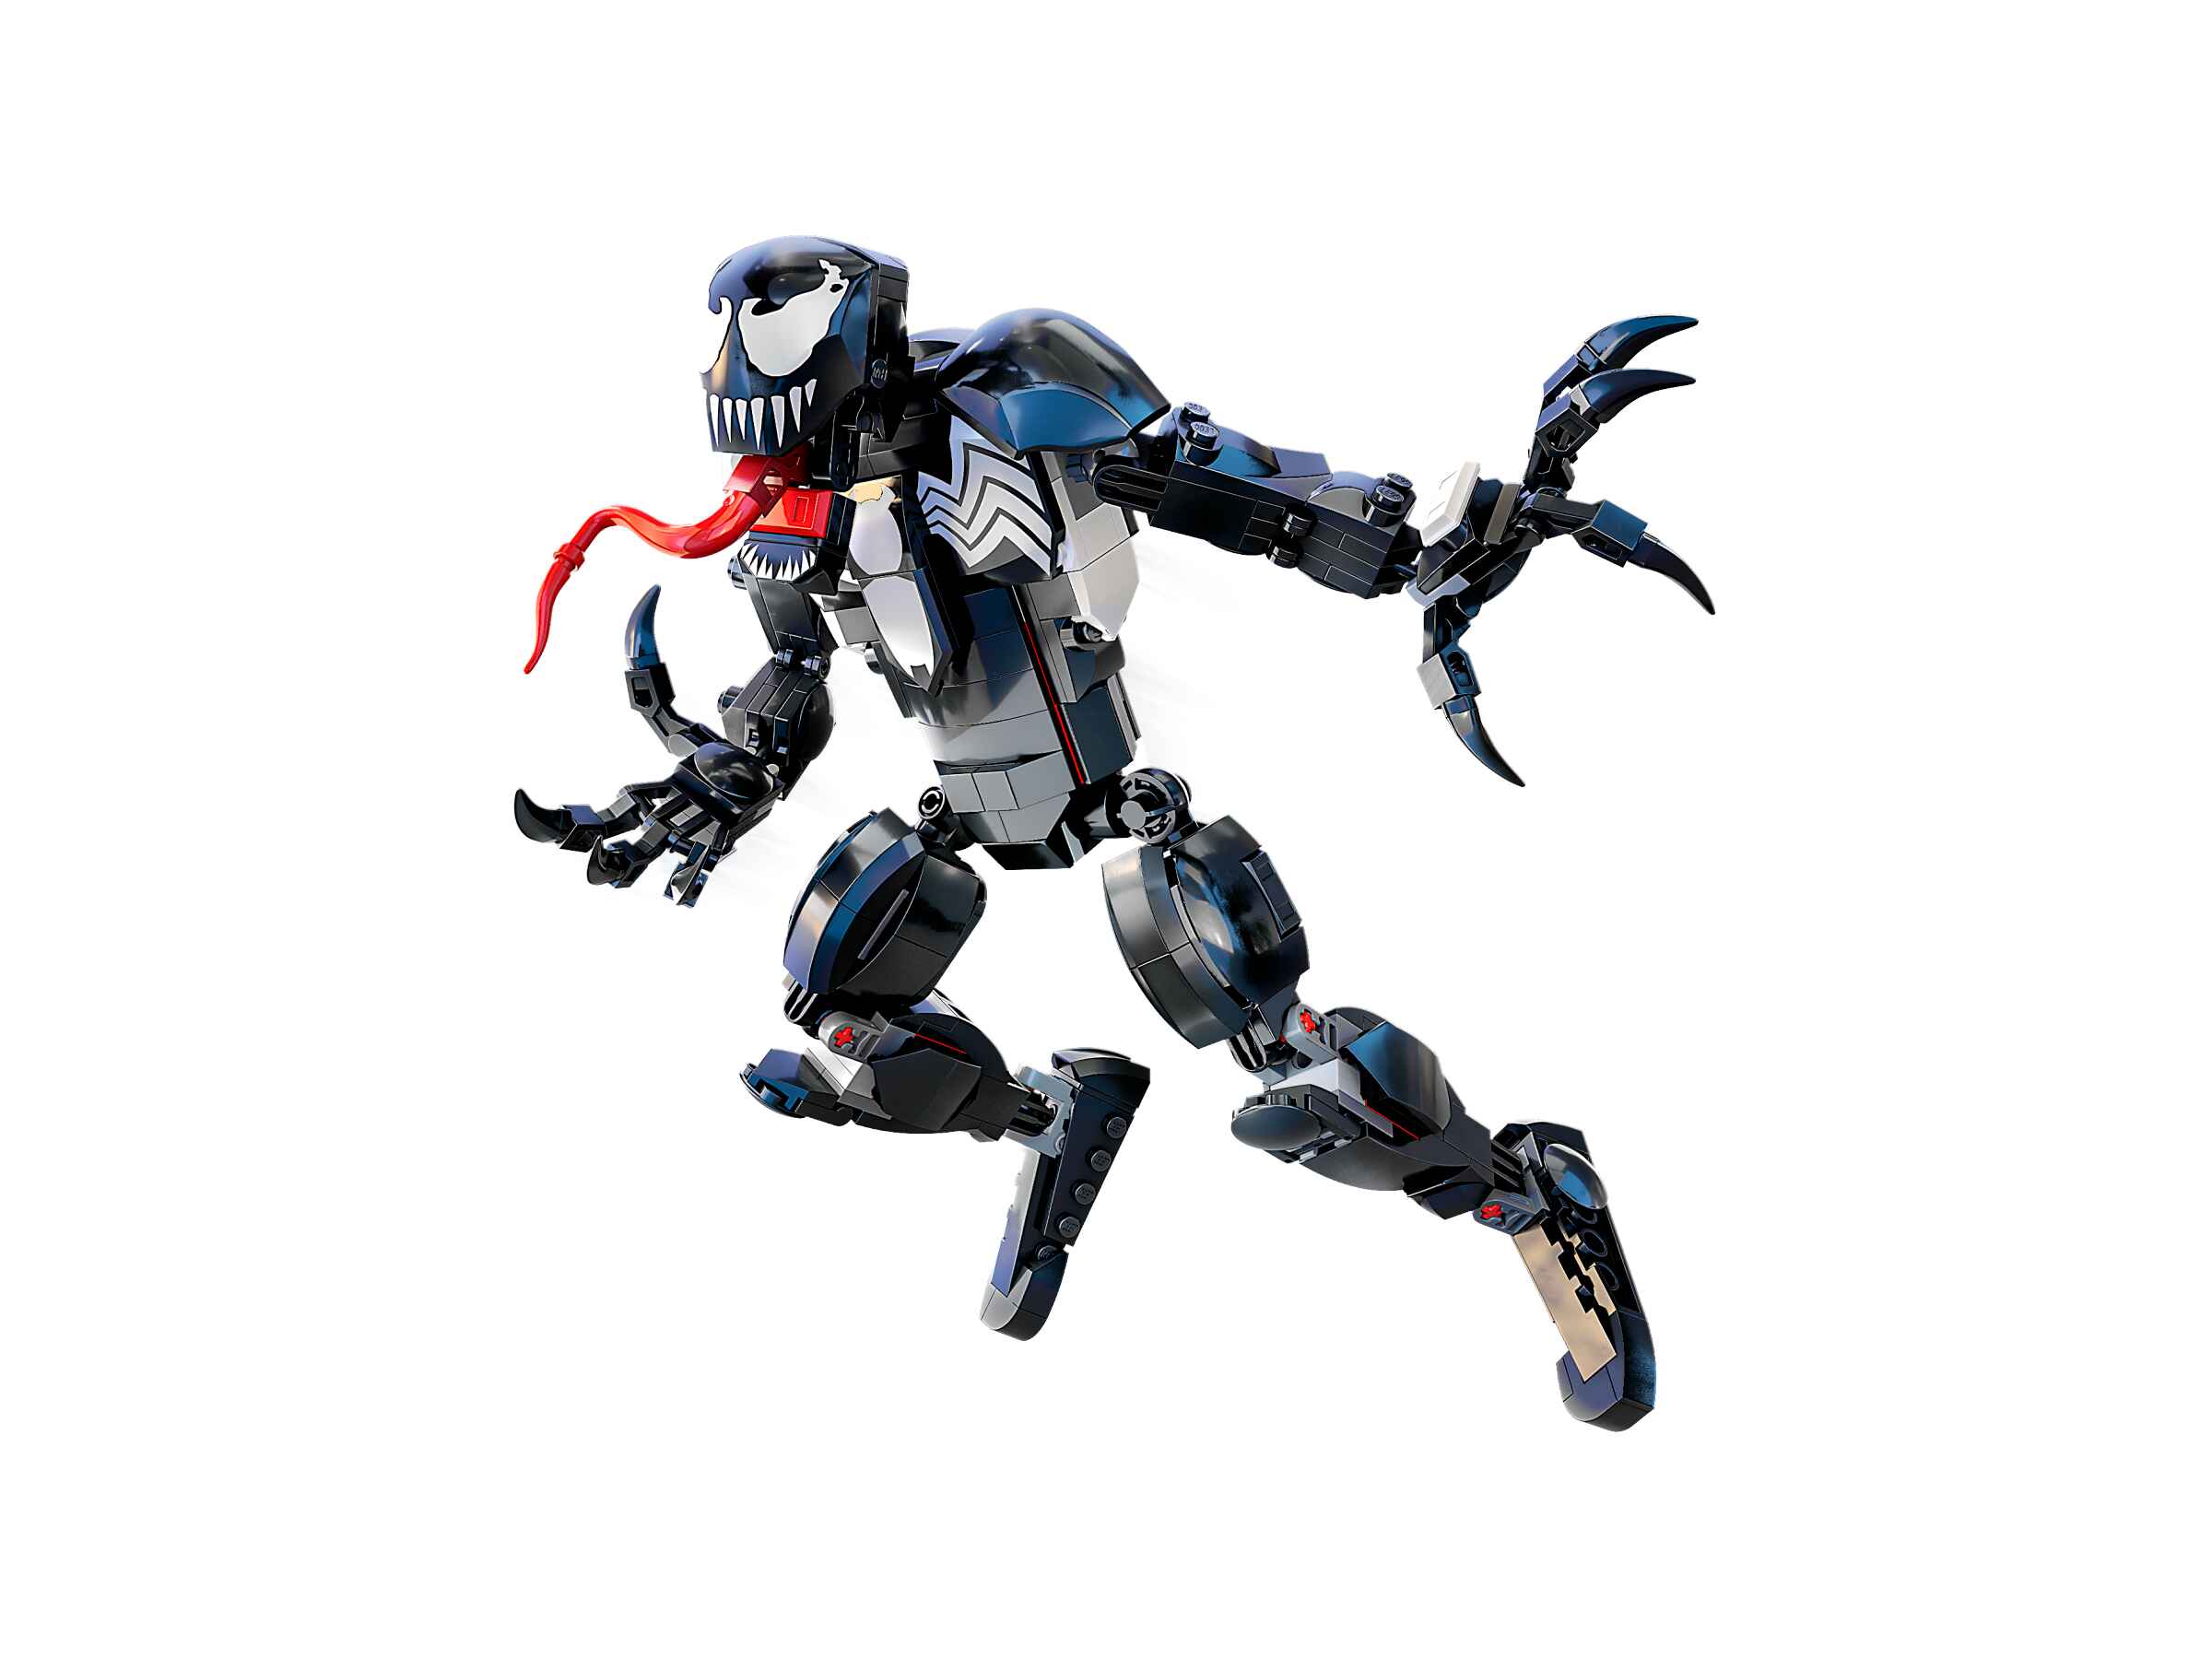 LEGO 76230 Marvel Venom Figur, beweglichen Superschurken, sammelbares Set